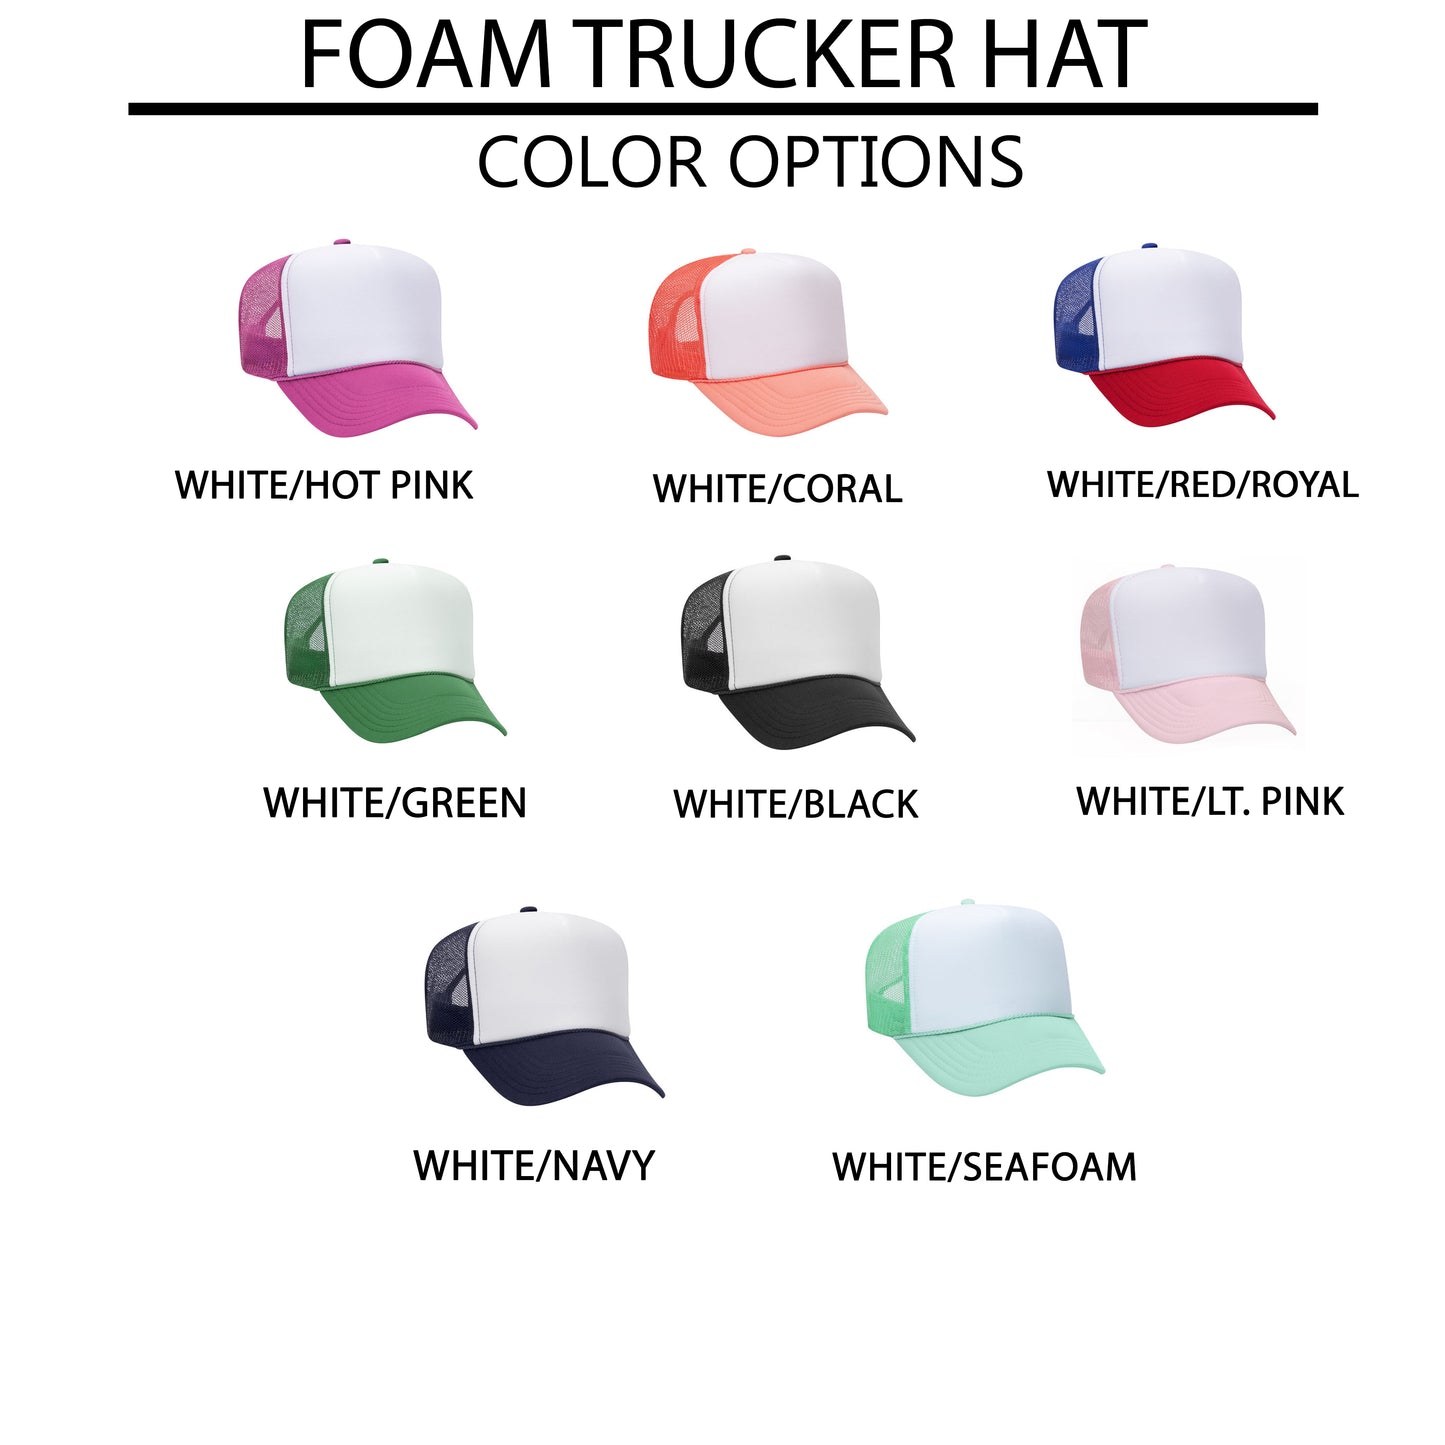 Jesus Is The Answer | Foam Trucker Hat